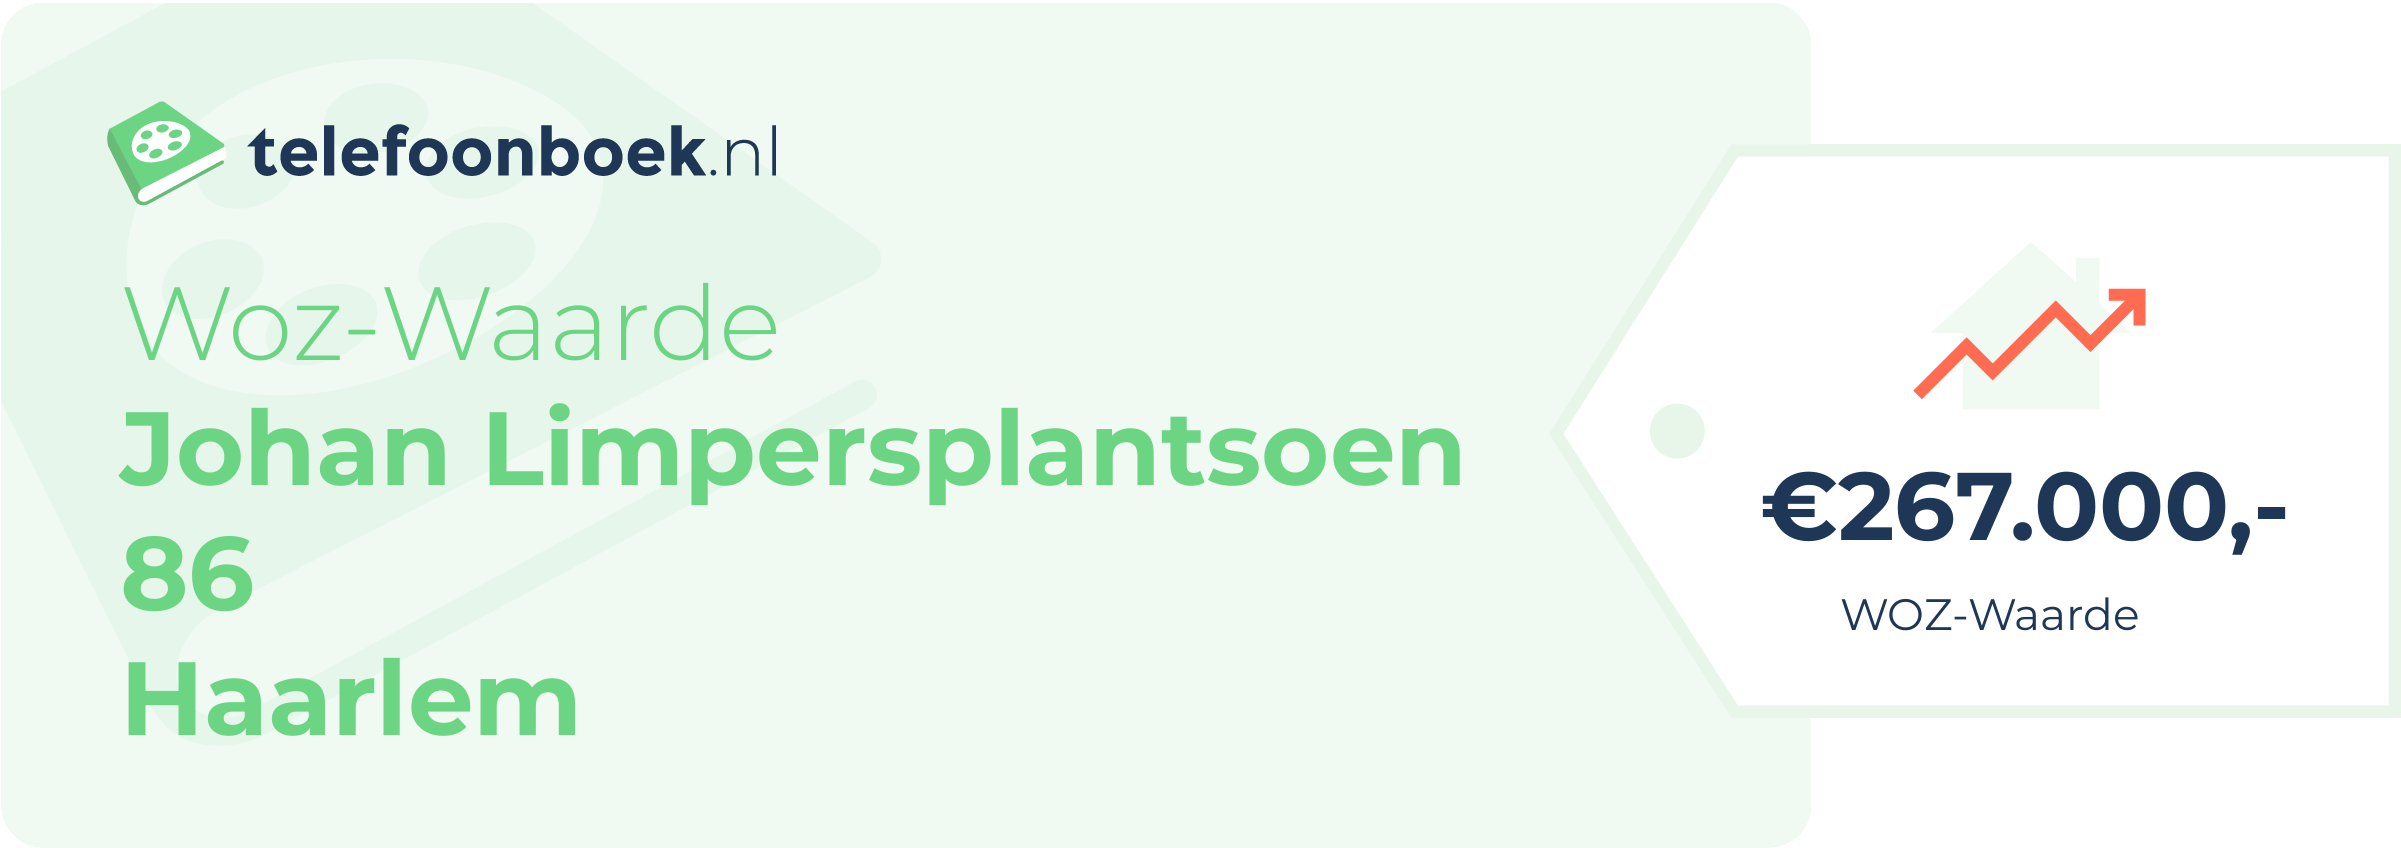 WOZ-waarde Johan Limpersplantsoen 86 Haarlem